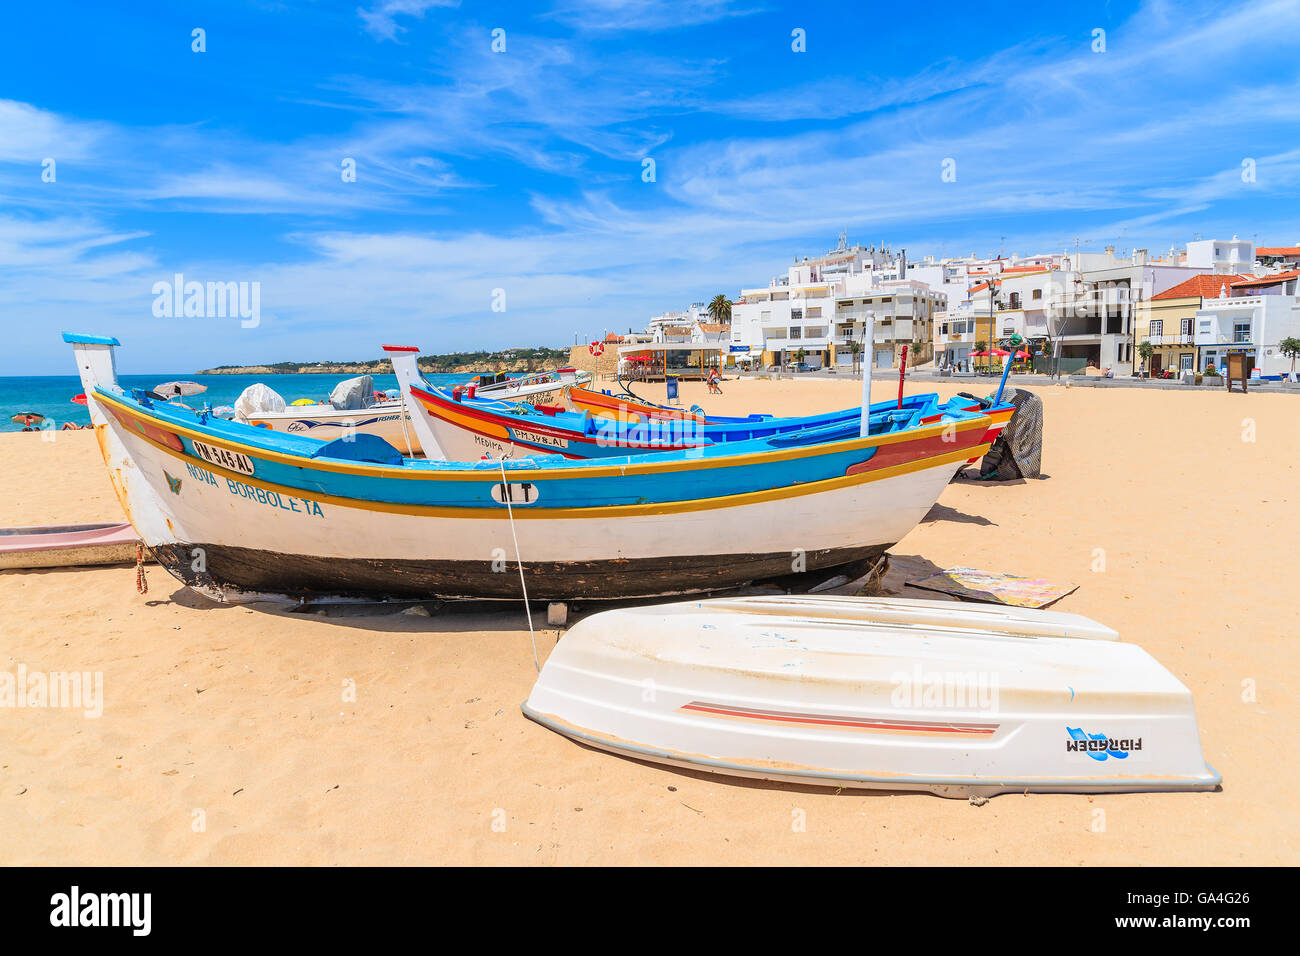 ARMACAO DE PERA BEACH, PORTUGAL - 17. Mai 2015: typische bunte Fischerboote am Strand in Armacao de Pera Küstenstadt. Die Region Algarve ist beliebtes Urlaubsziel in Portugal. Stockfoto